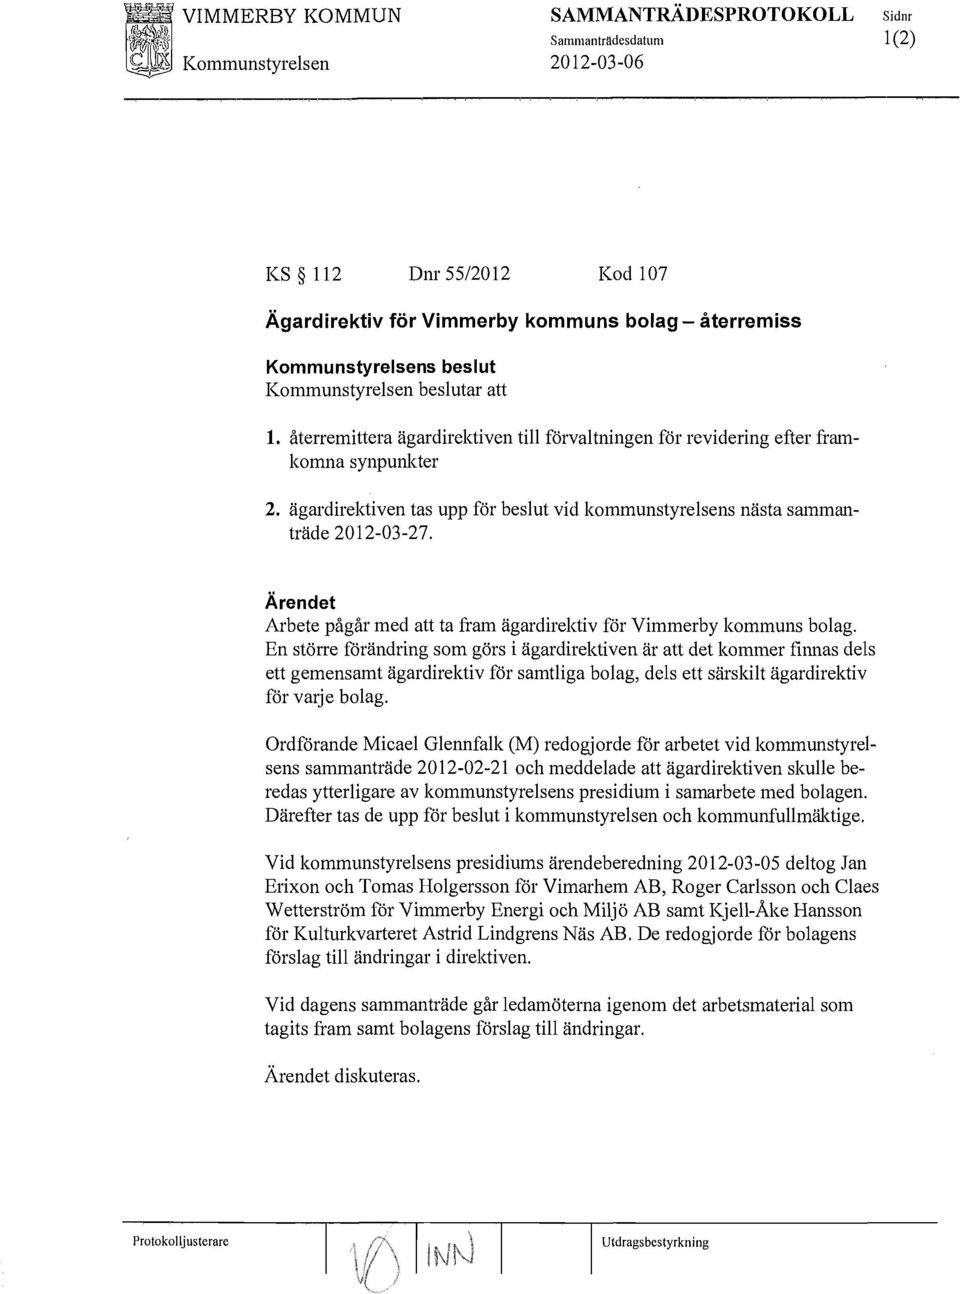 Arbete pågår med att ta fram ägardirektiv för Vimmerby kommuns bolag.